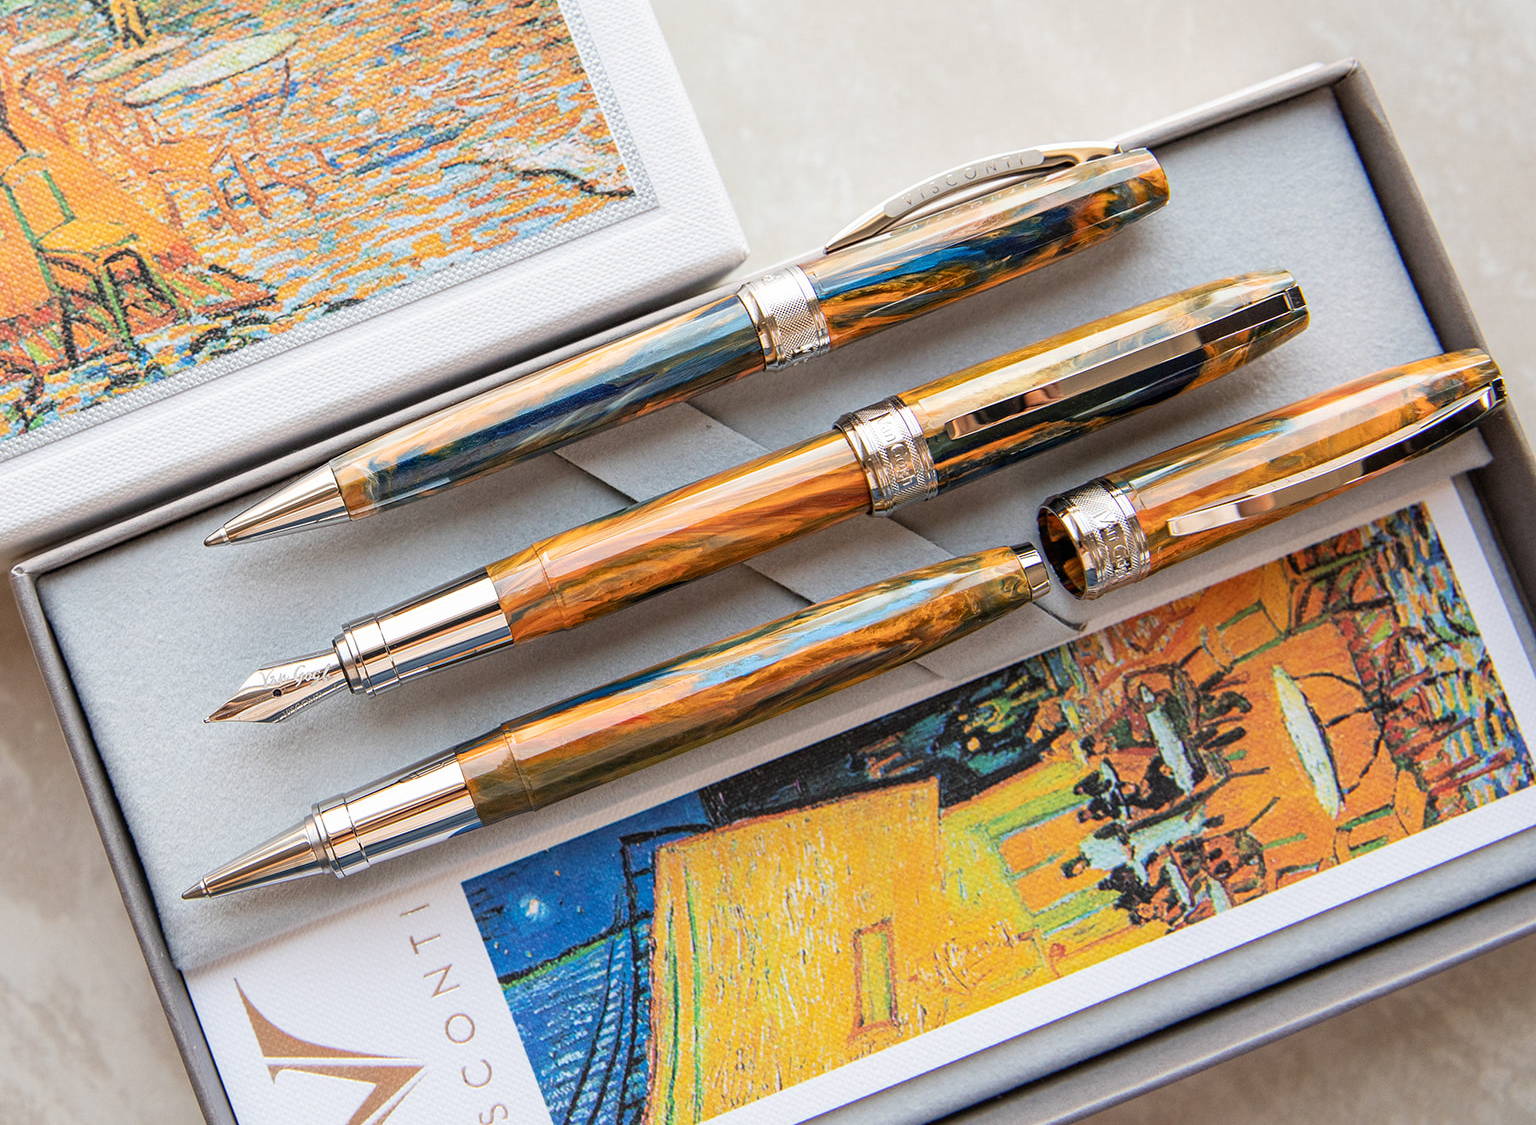 Best Luxury Ballpoint Pens of 2023 - Goldspot Pens